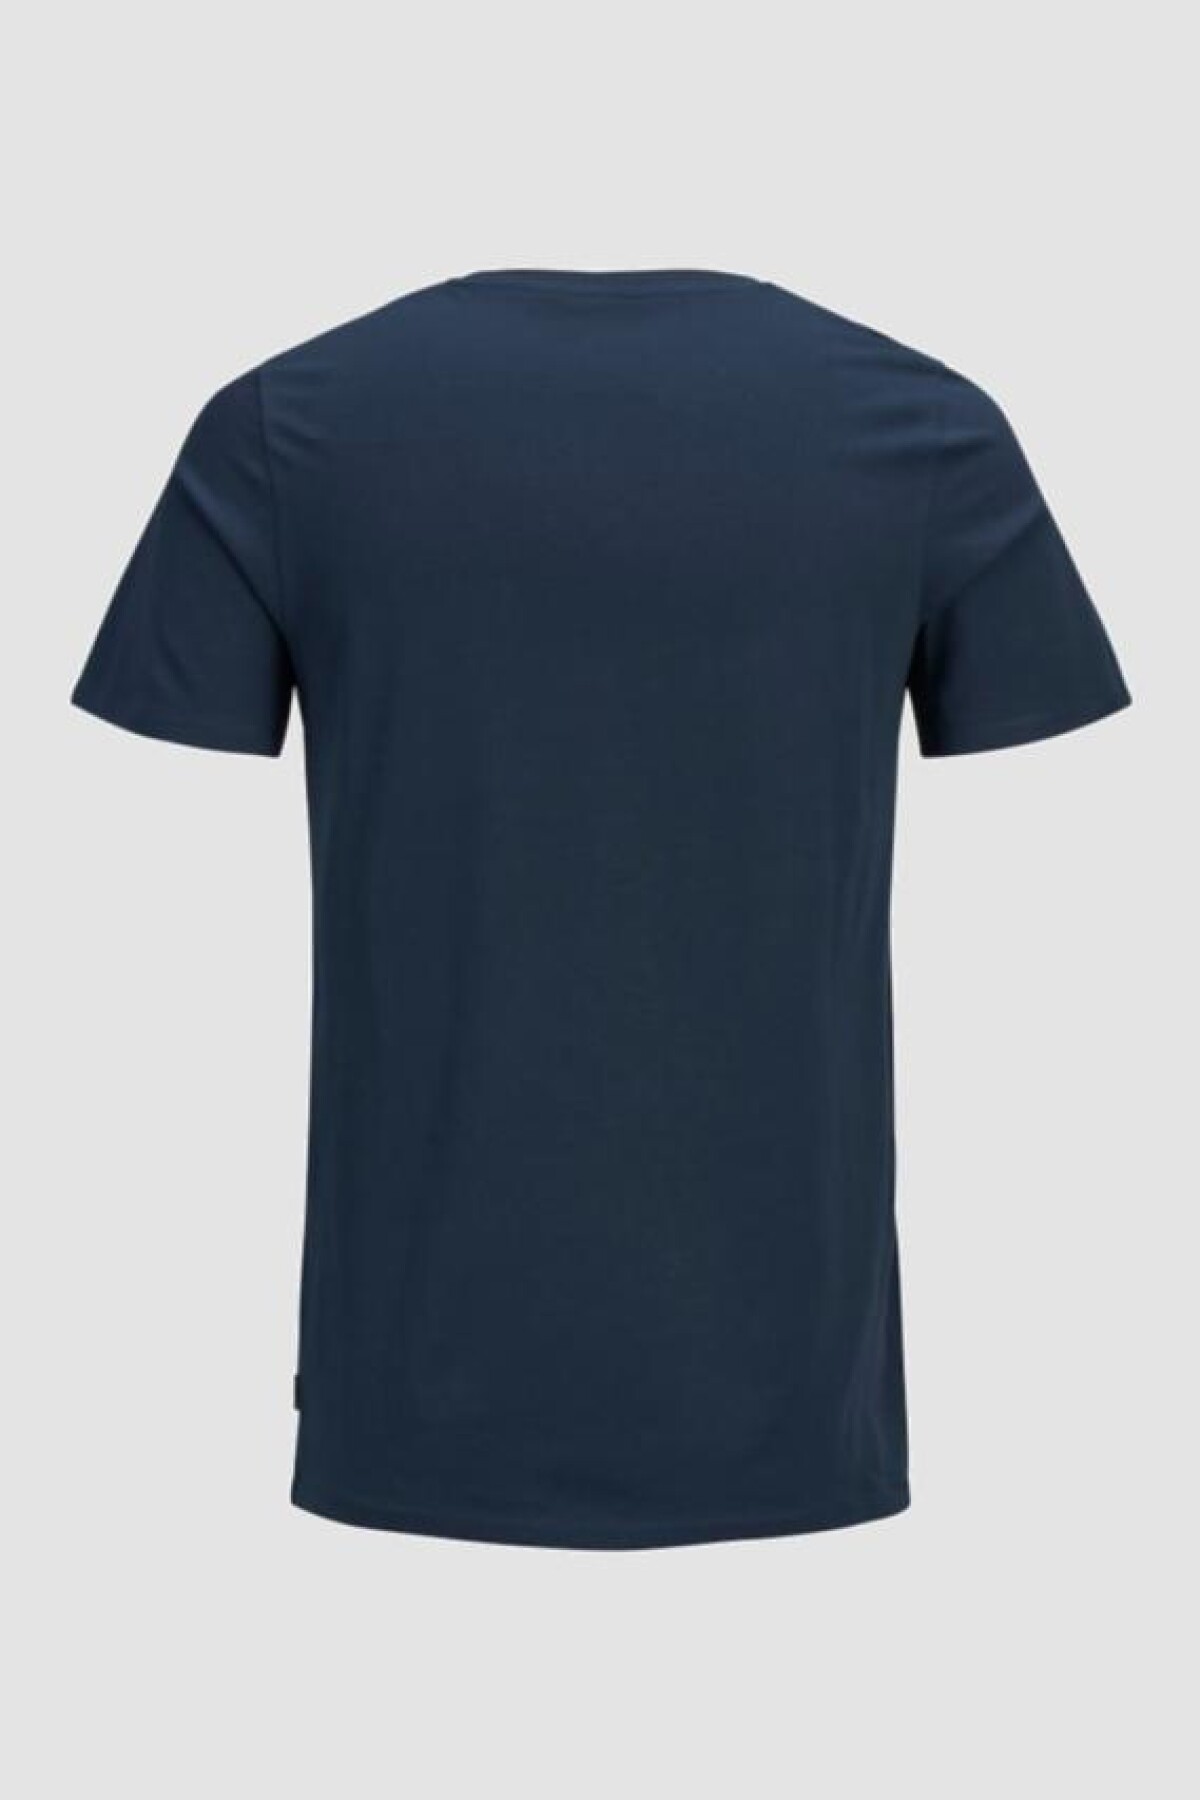 Camiseta "pocket" Navy Blazer